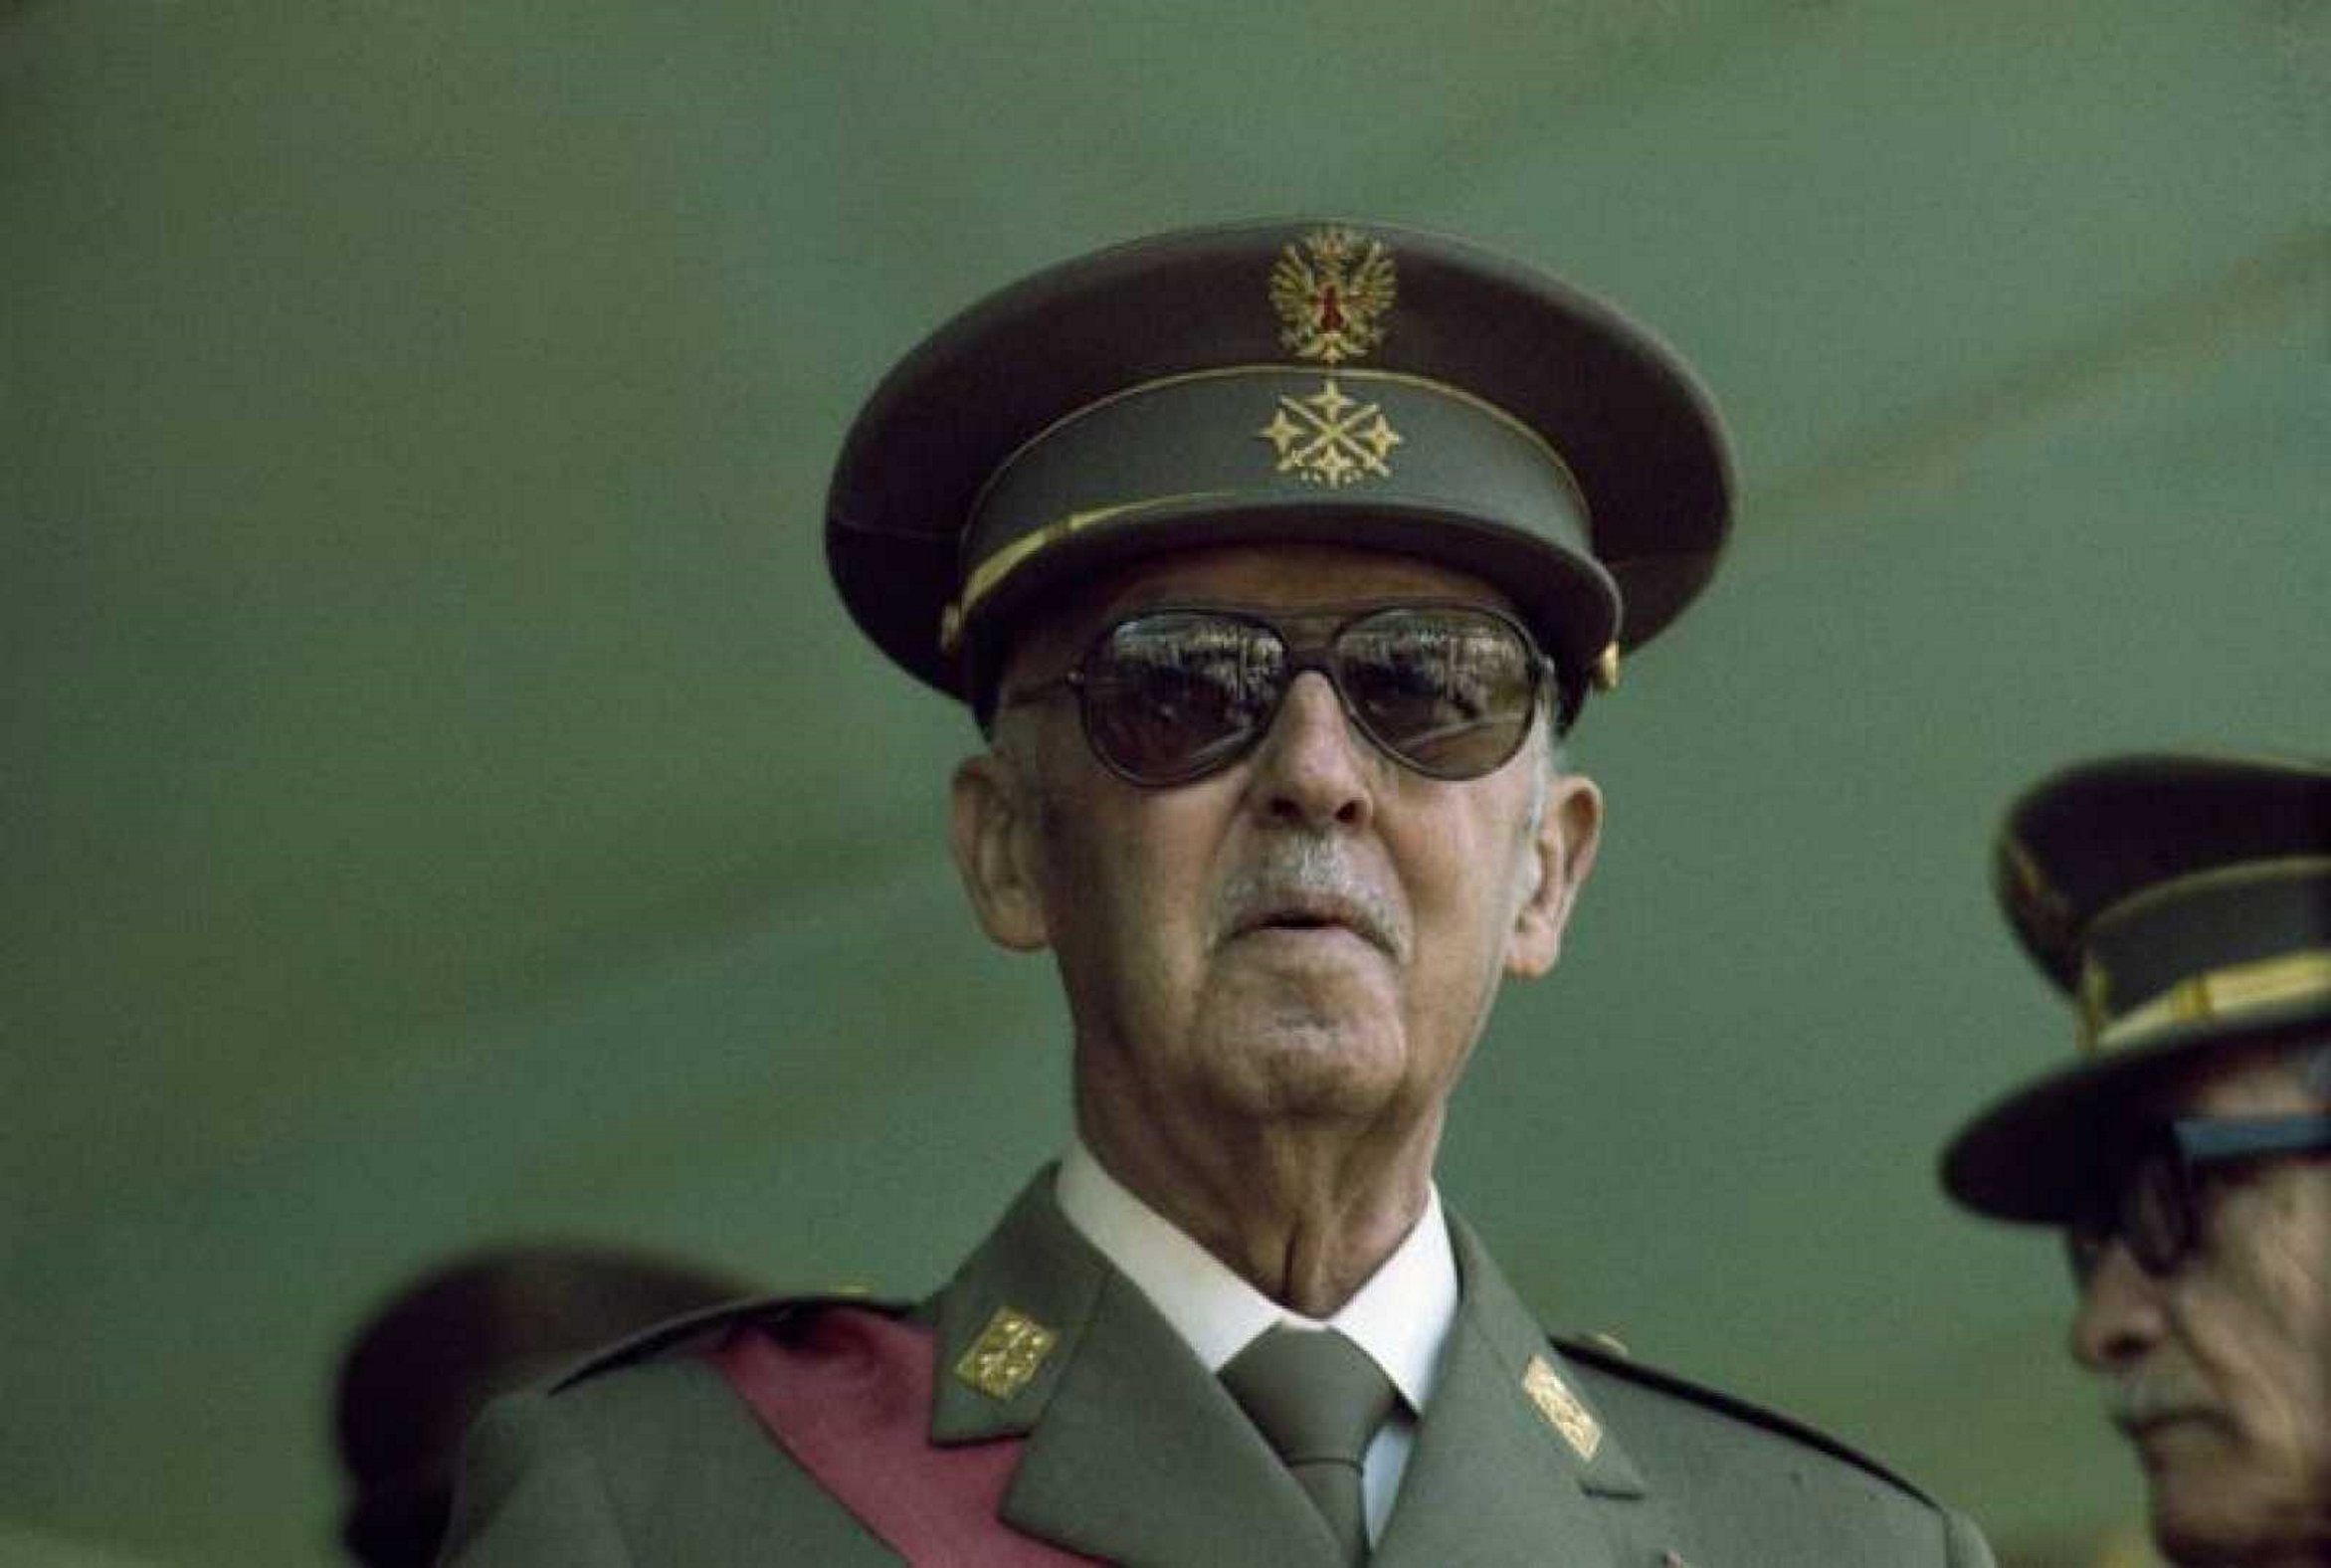 Una associació es queixa perquè el Suprem va considerar Franco cap d'Estat des del 36